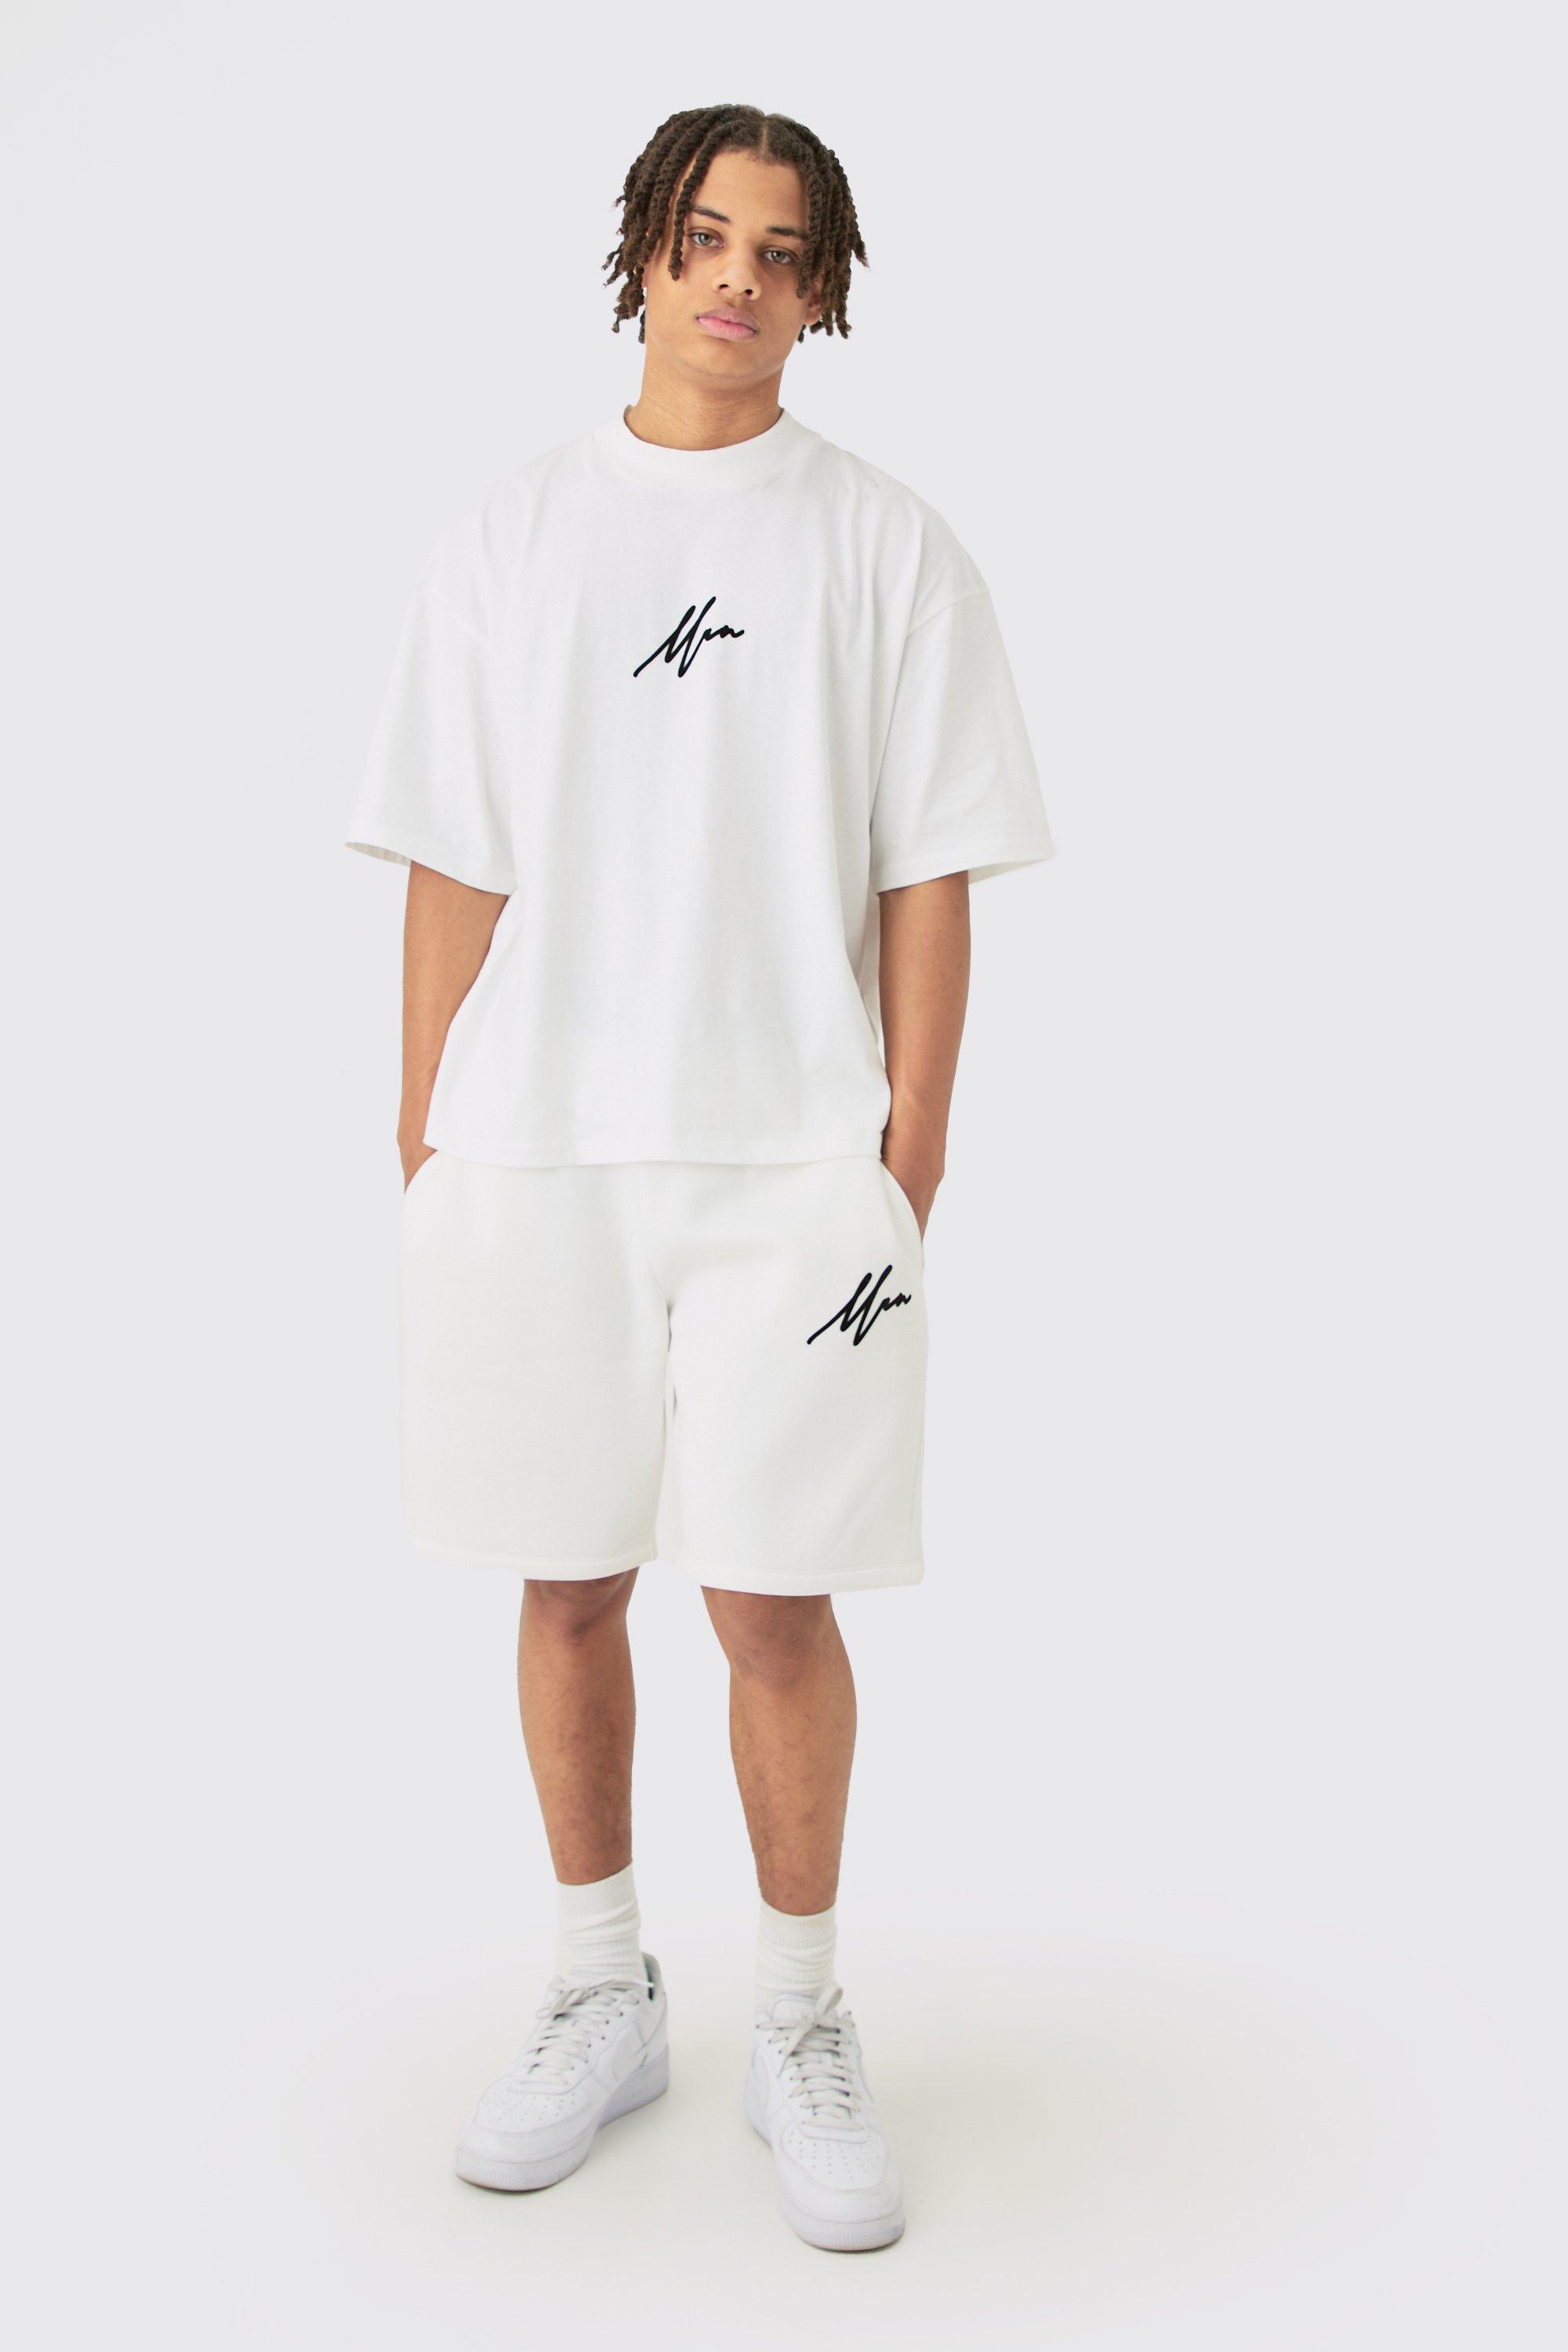 Image of Oversized Boxy Man Flock Printed T-shirt & Short Set, Cream